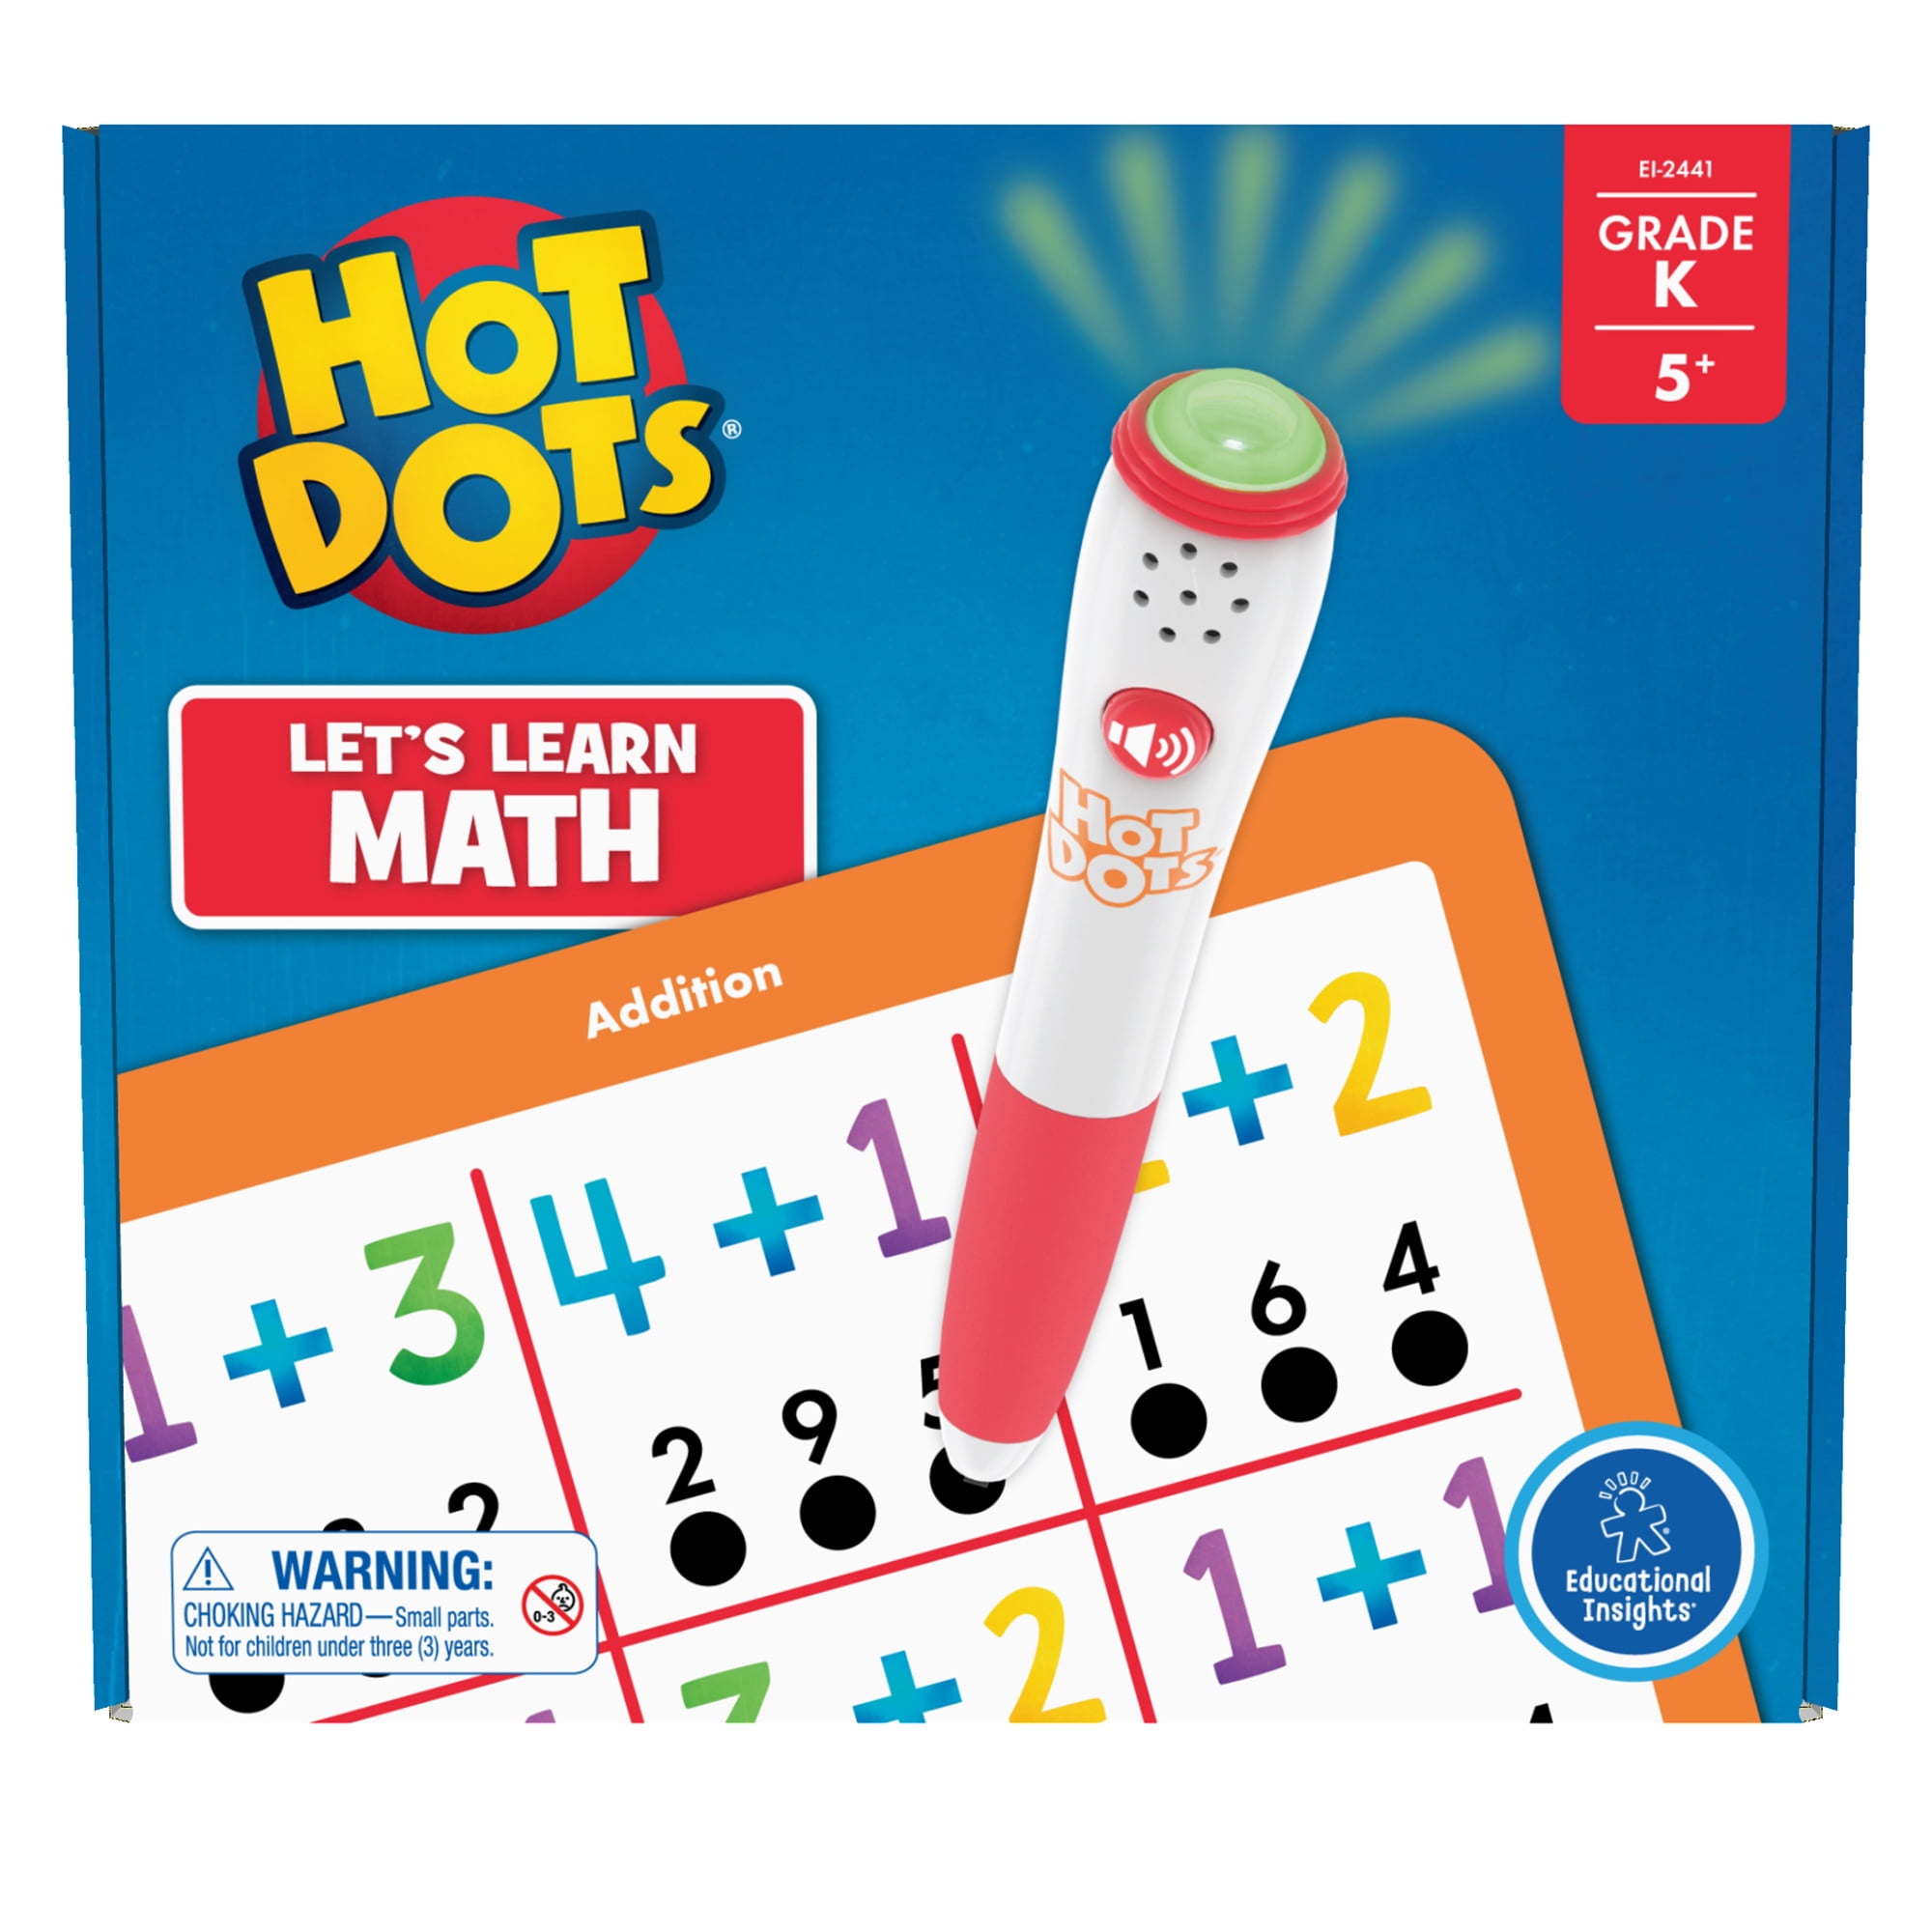 Lets Master Kindergarten Math for sale online Educational Insights 2373 Hot Dots Jr 